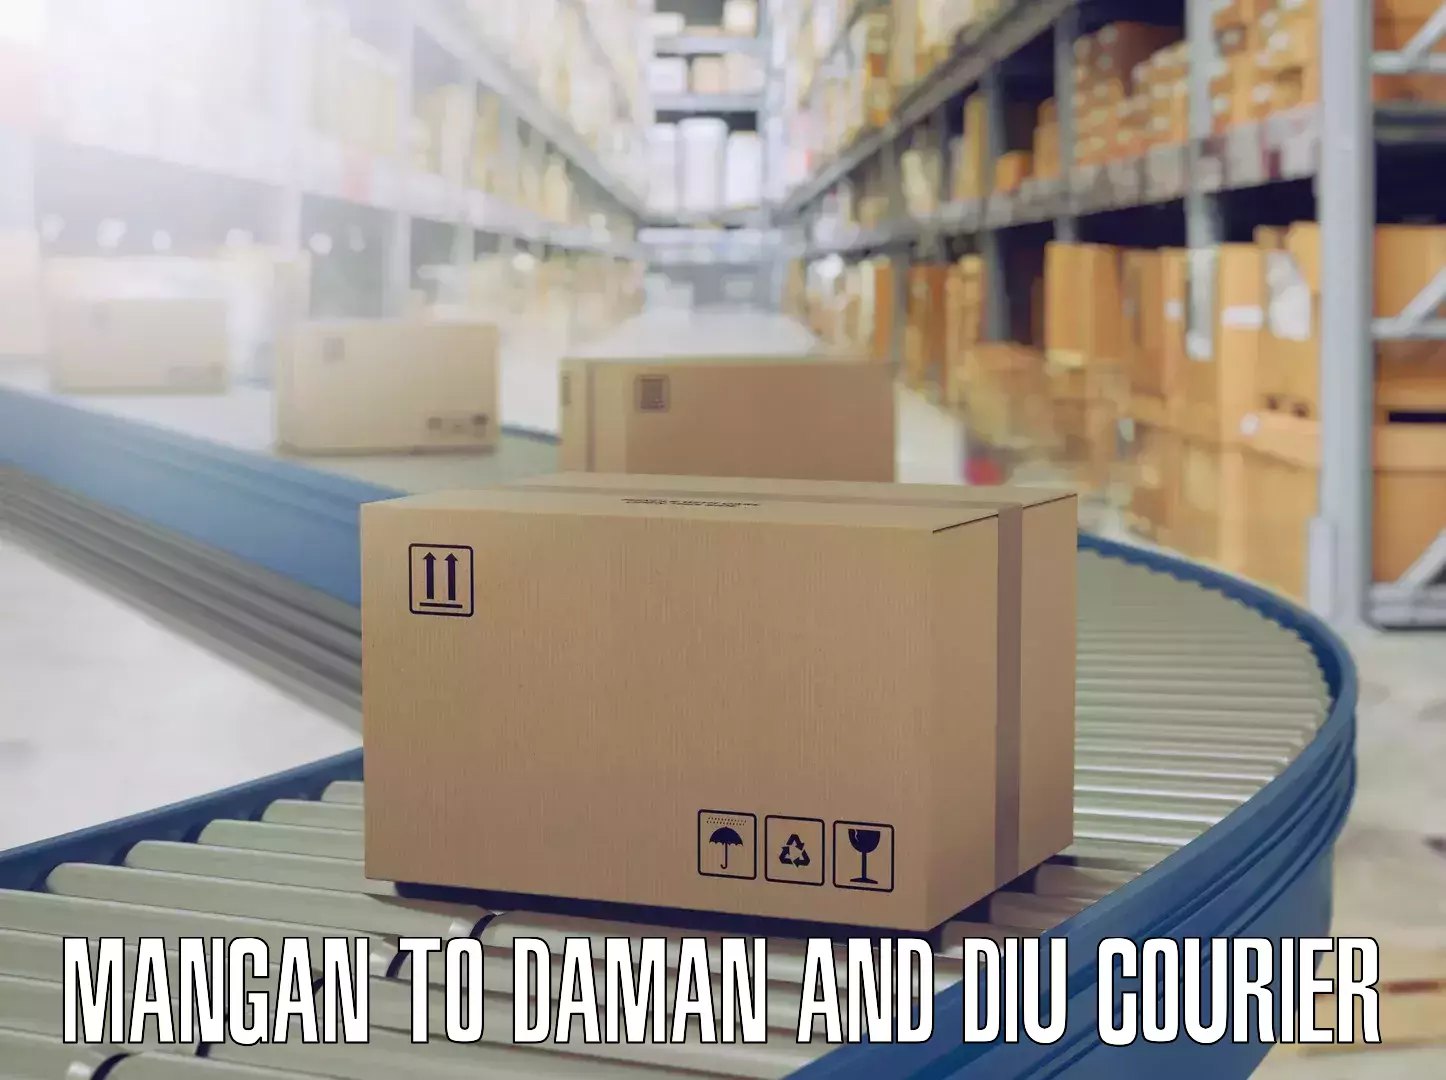 Budget-friendly movers Mangan to Daman and Diu